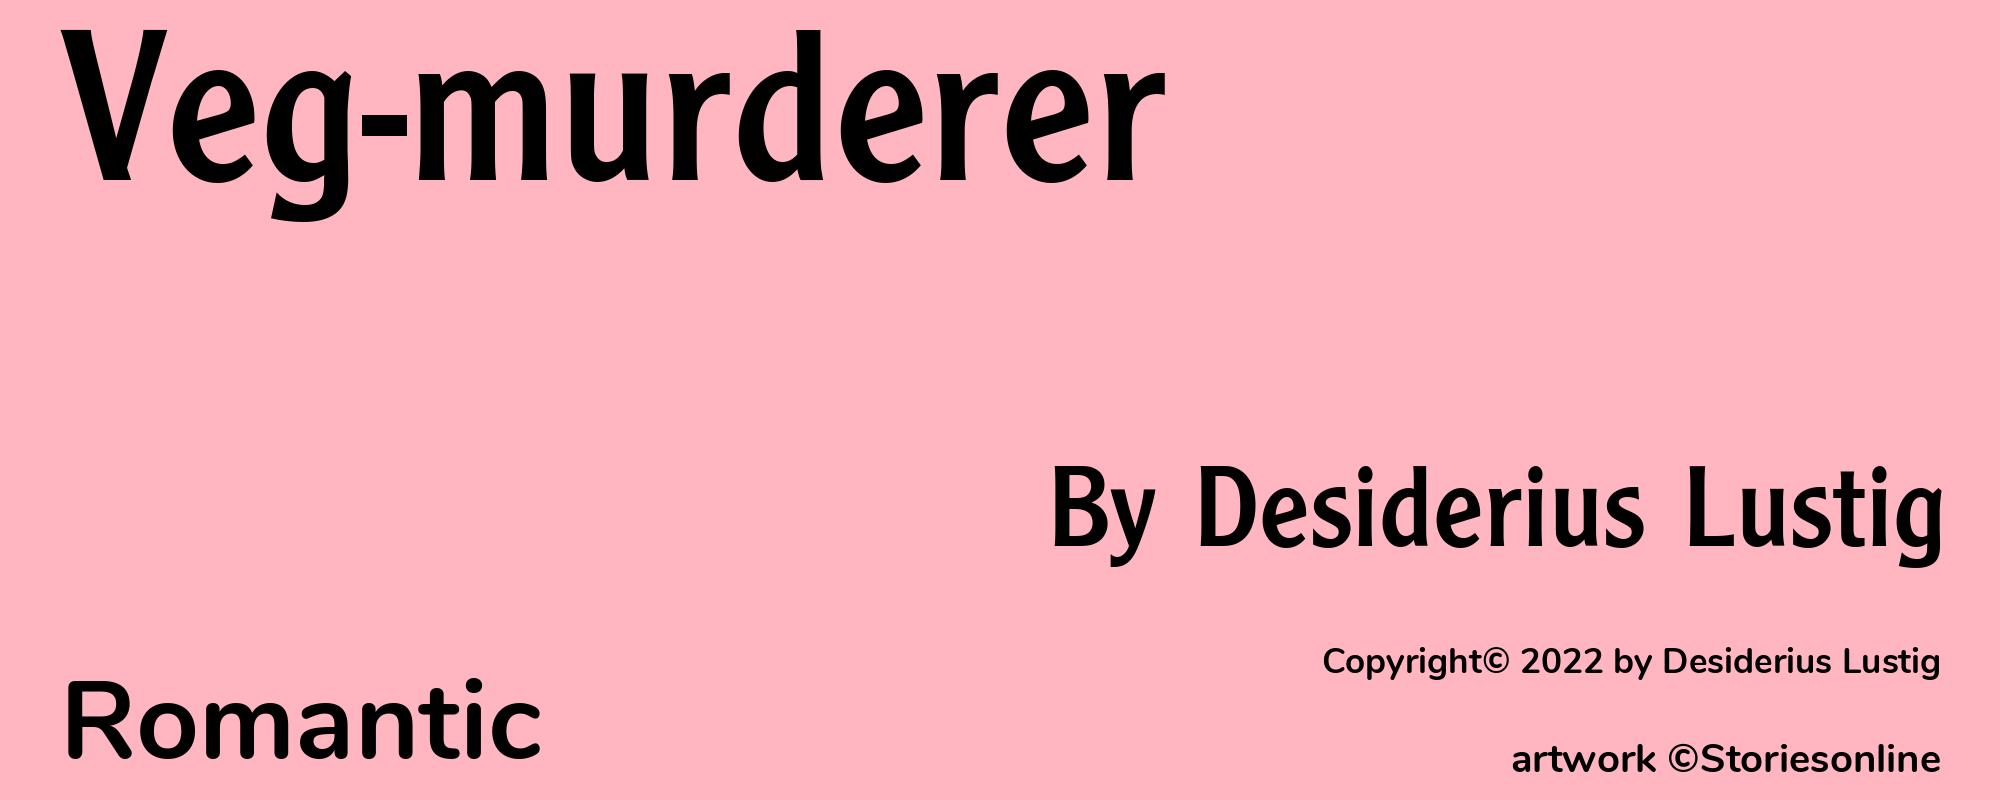 Veg-murderer - Cover